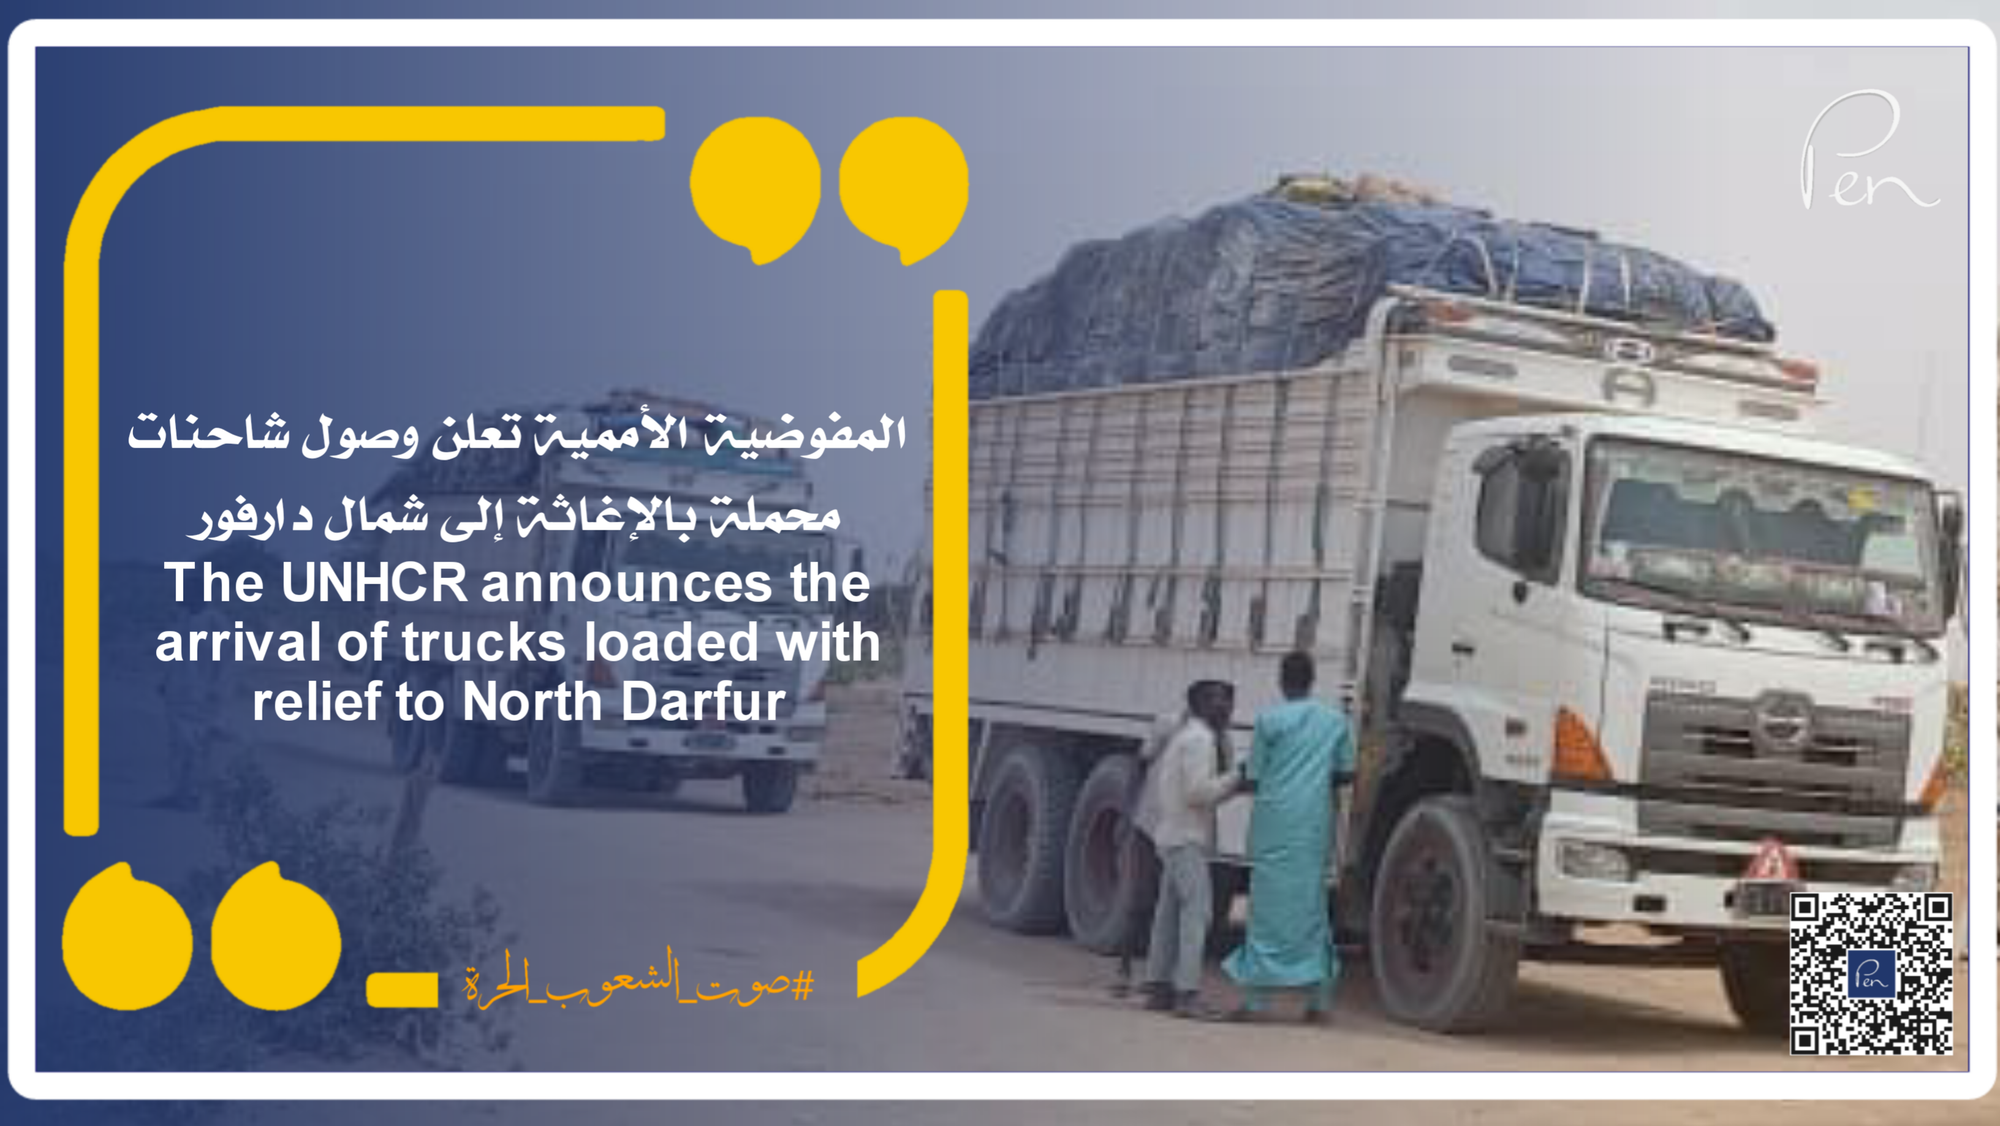 المفوضية الأممية تعلن وصول شاحنات محملة بالإغاثة إلى شمال دارفور